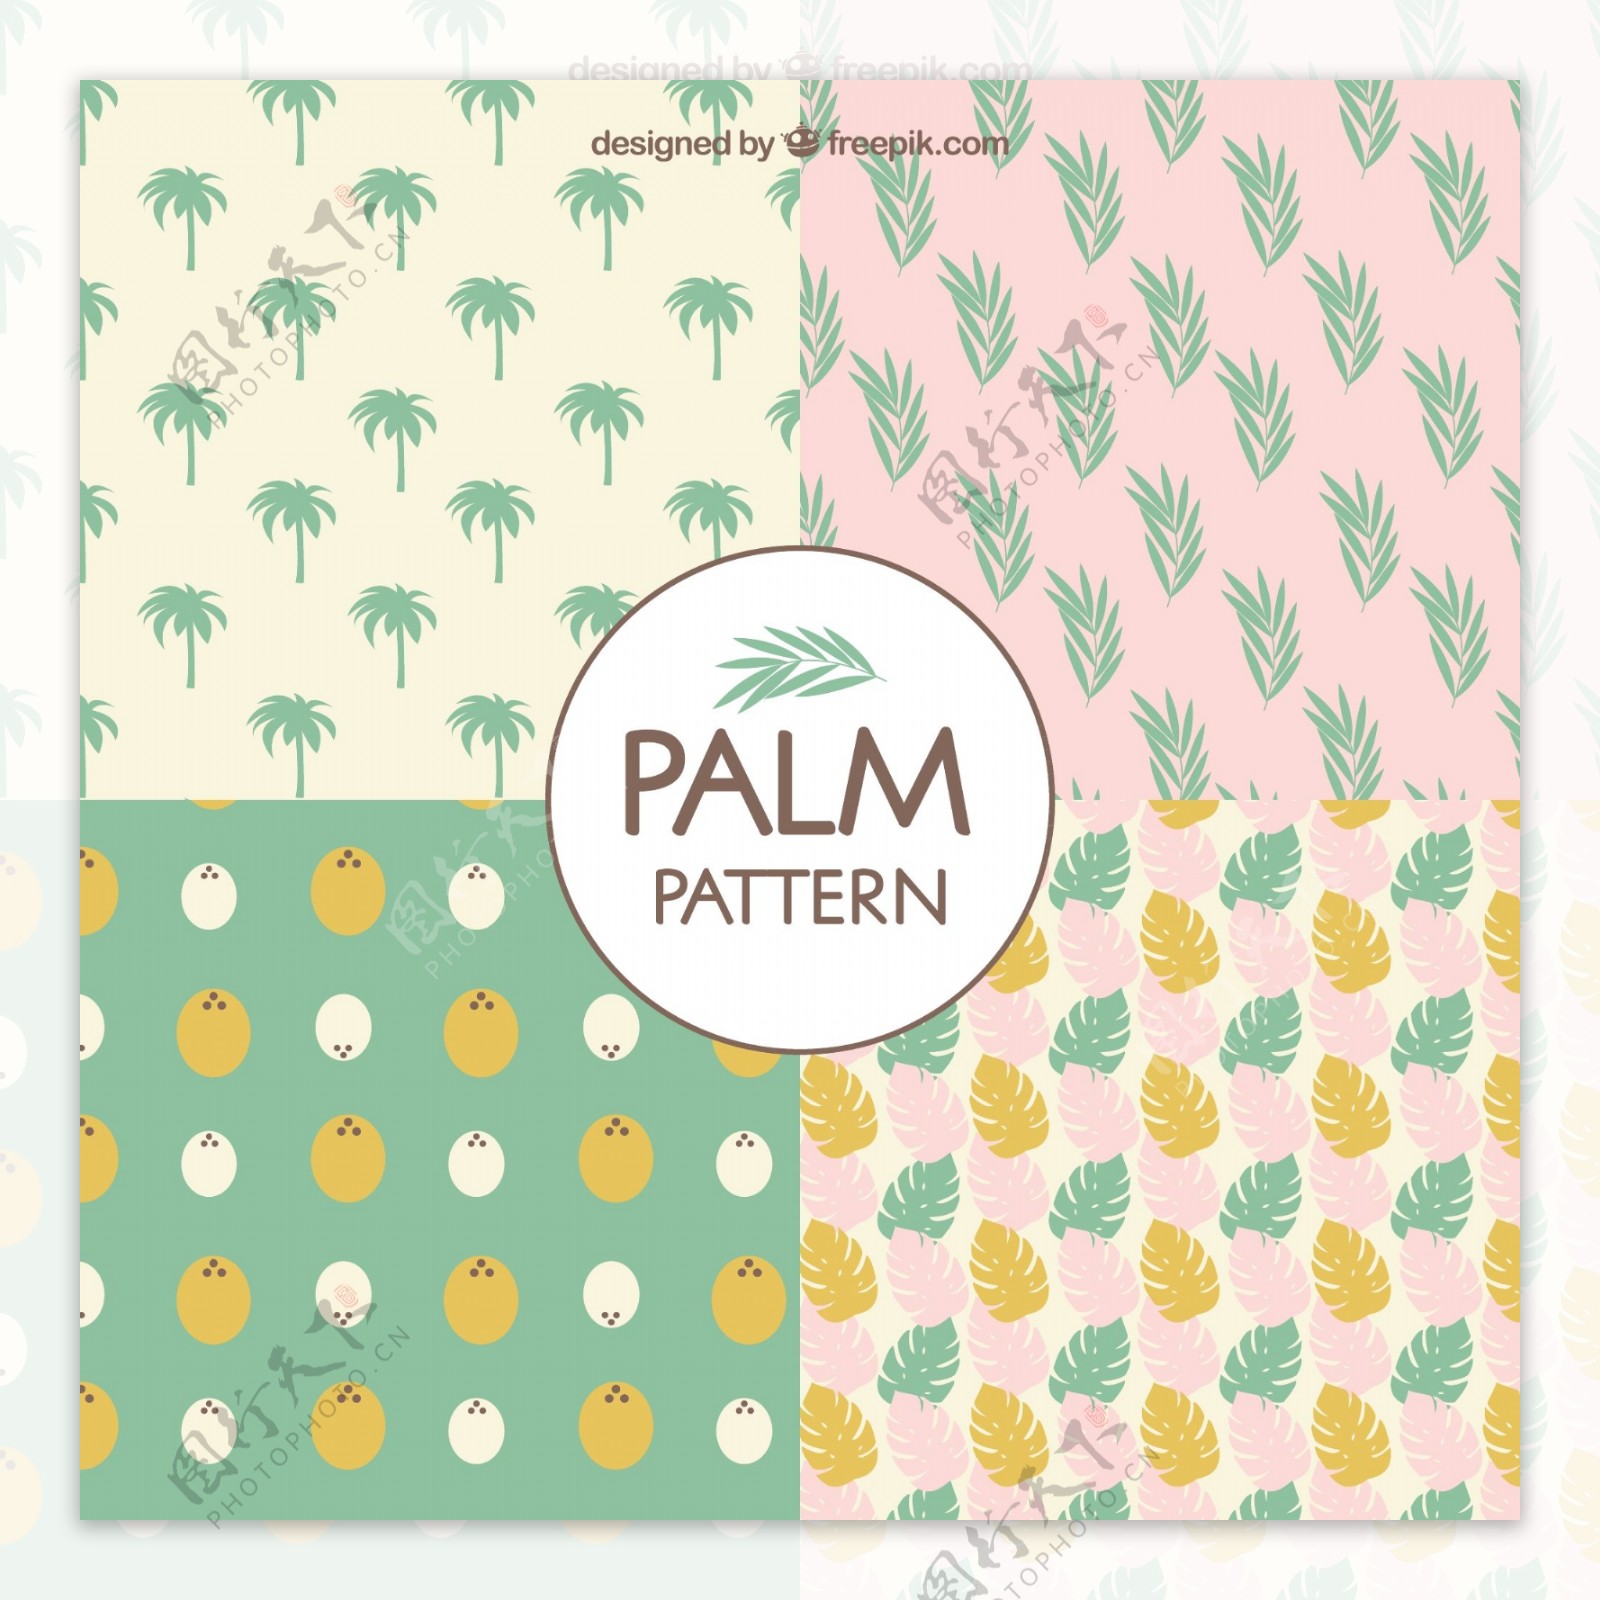 手绘柔和颜色的棕榈树装饰图案矢量素材